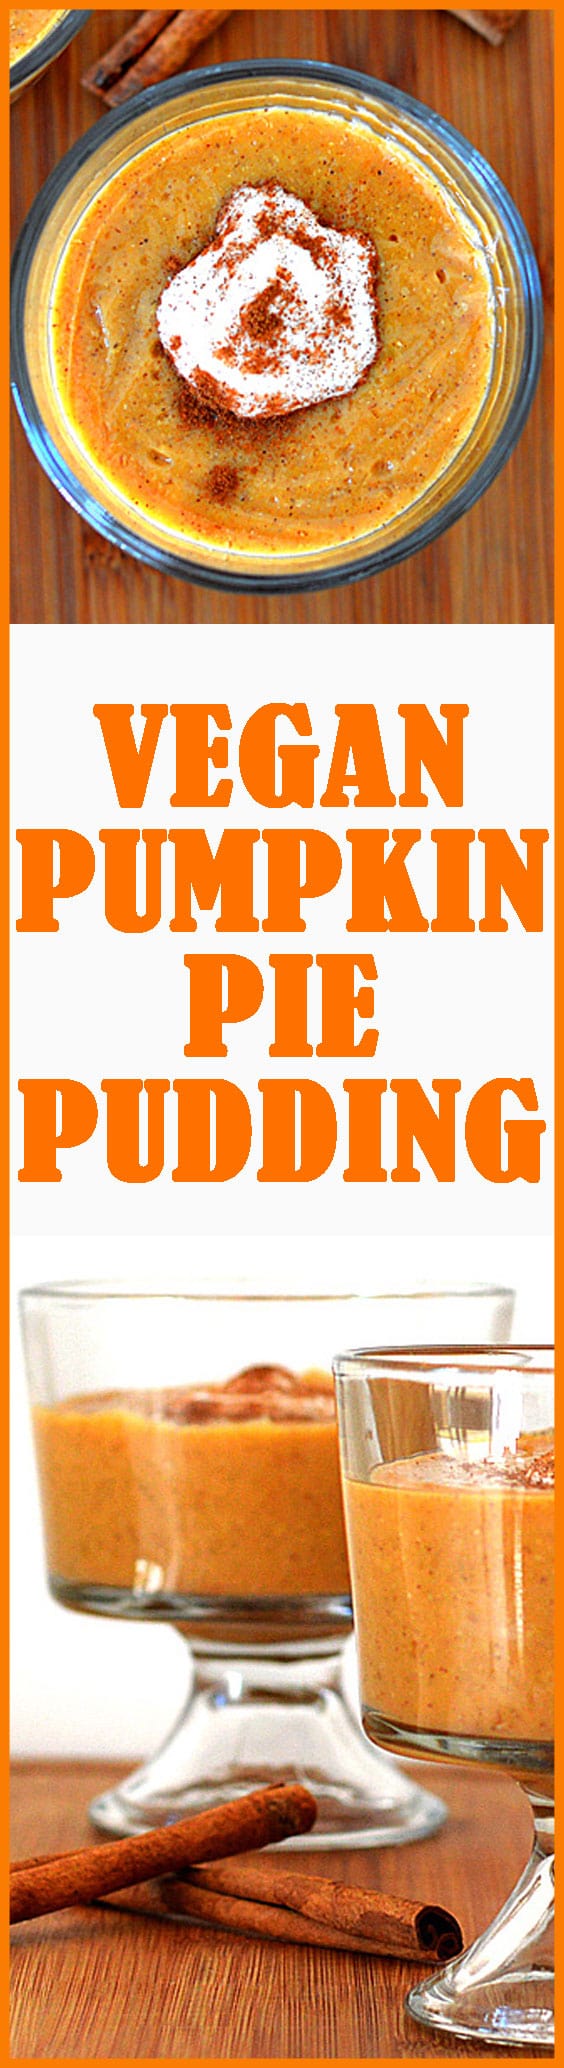 Vegan Pumpkin Pie Pudding